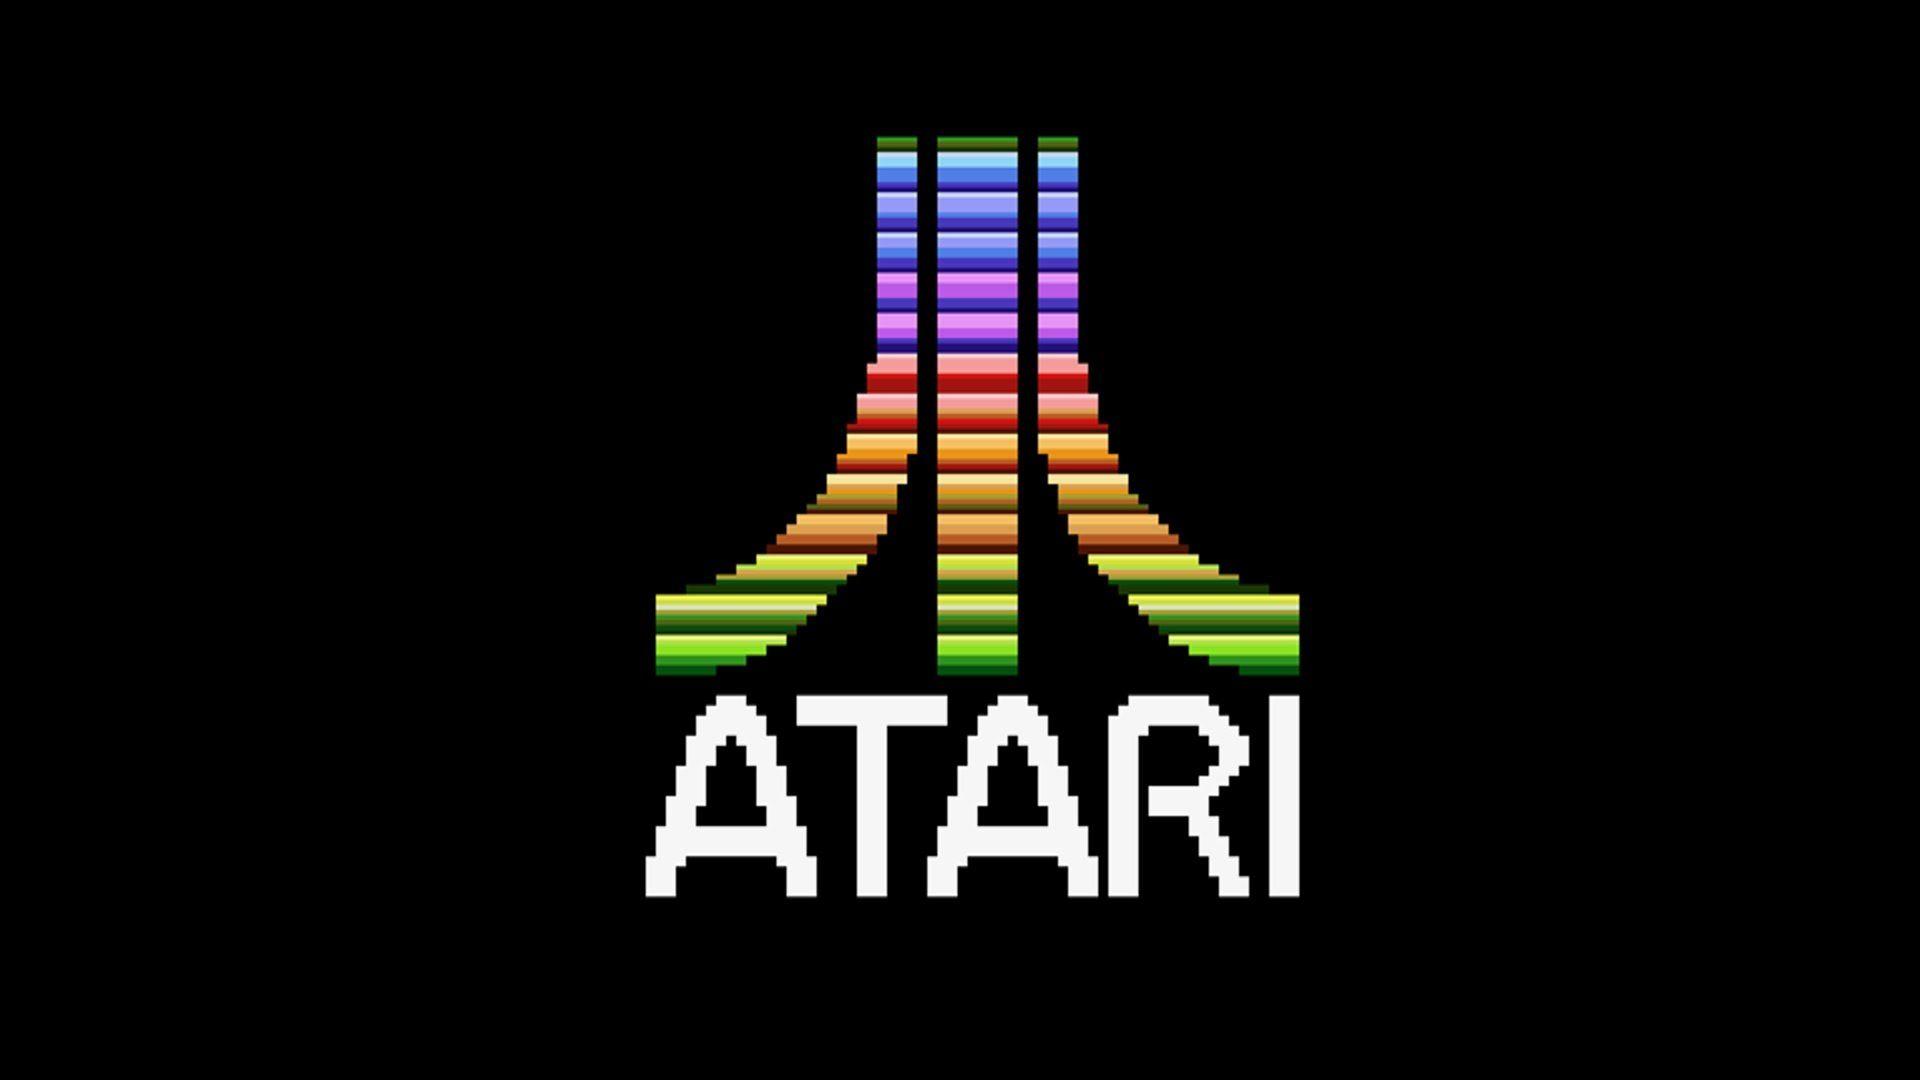 The Ultimate Atari Tribute